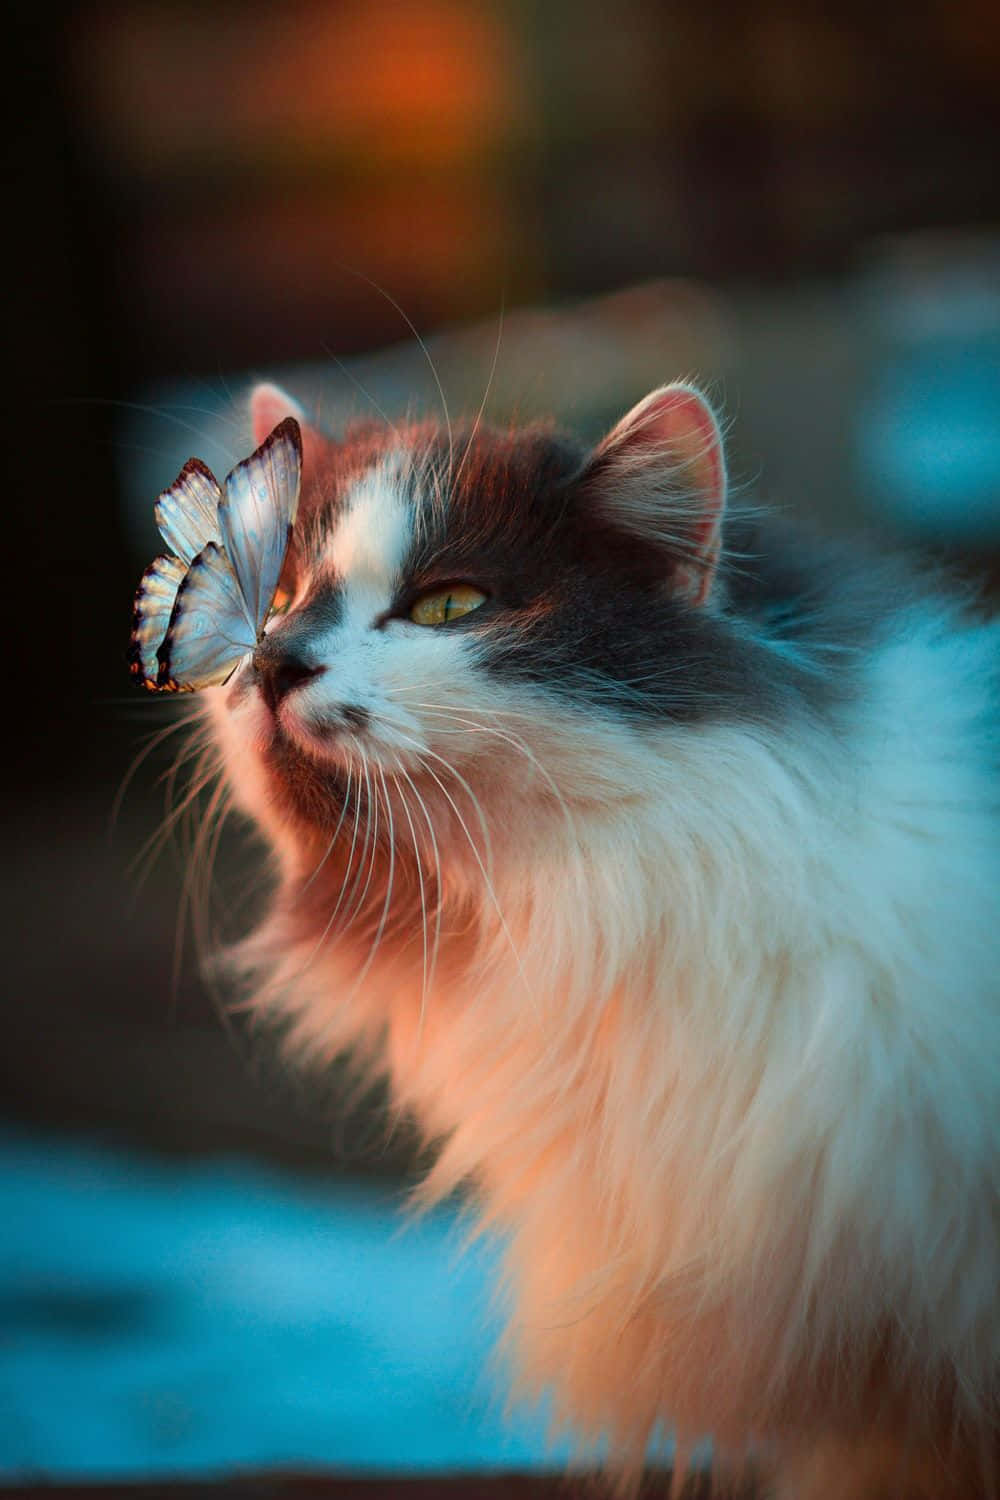 Lamaestosa Bellezza Di Un Felino - Immagine Incantevole Di Un Gatto